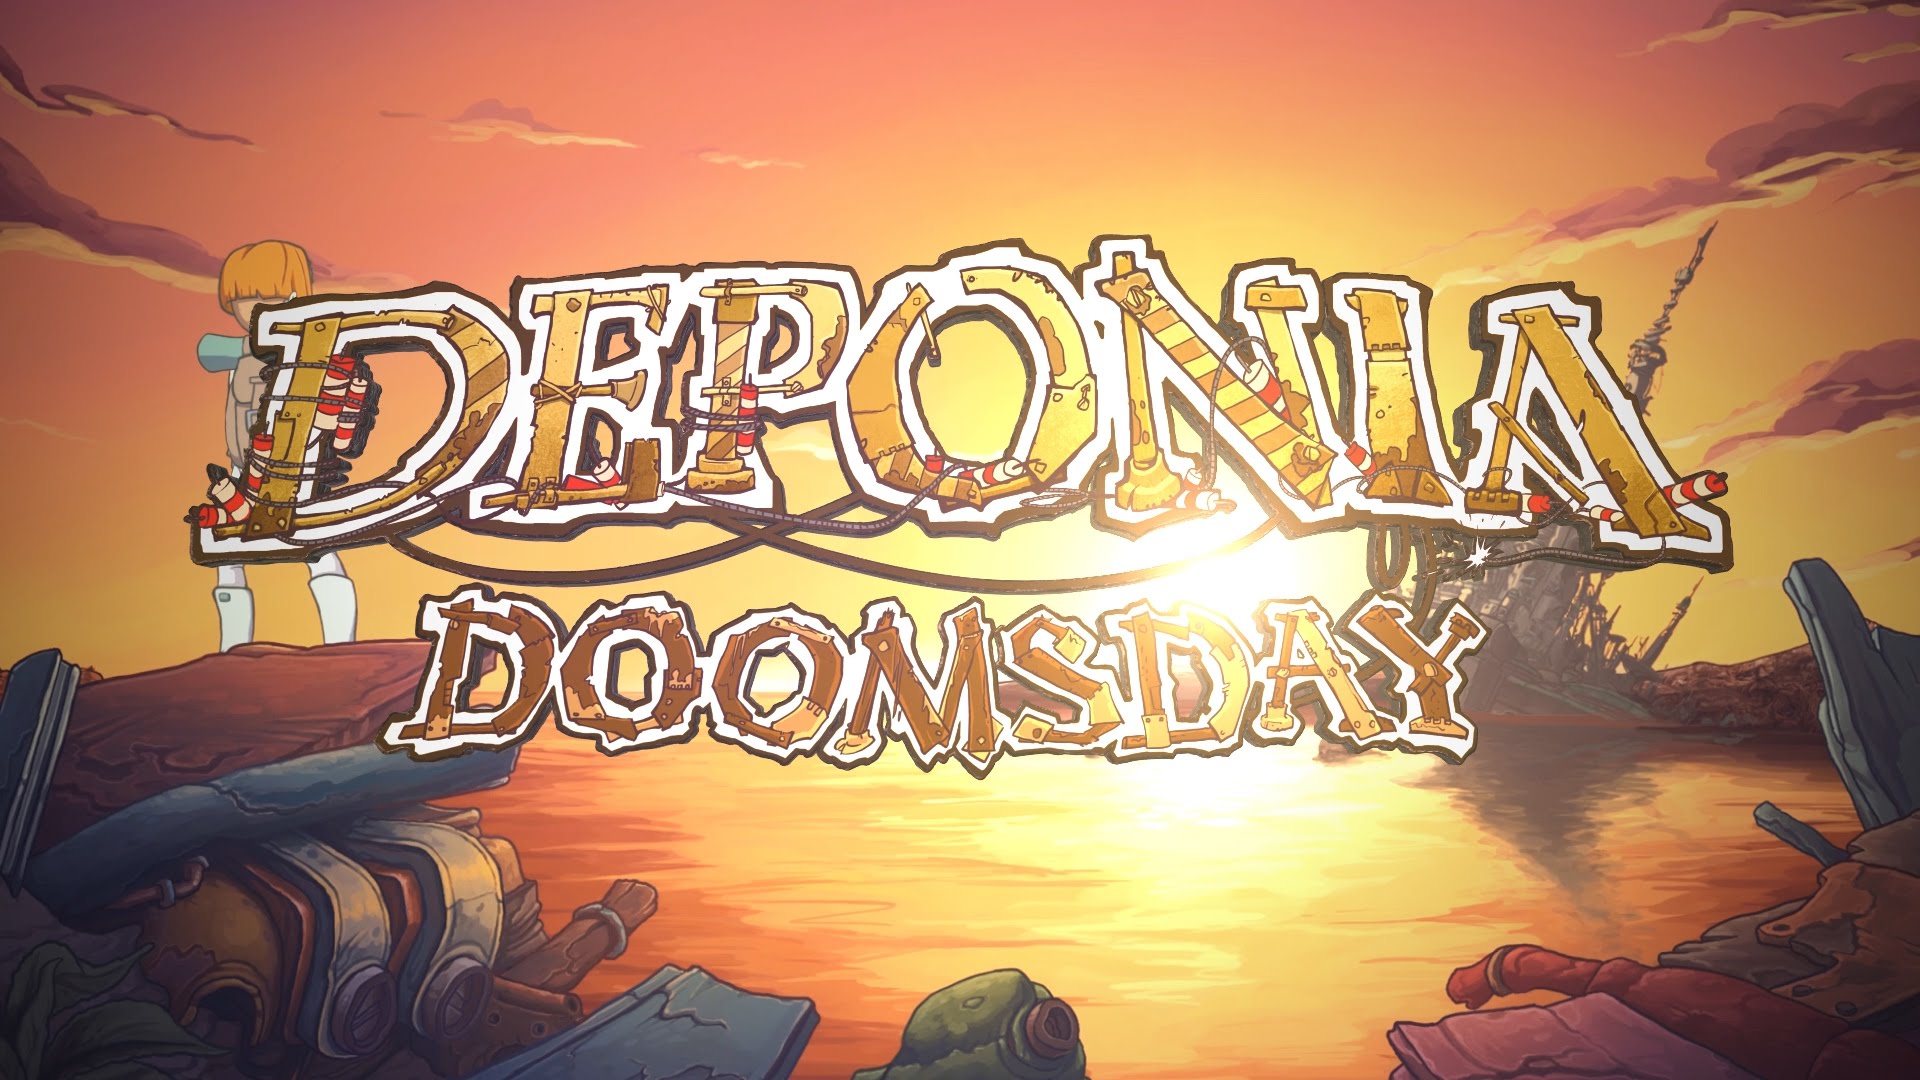 Deponia Doomsday Releasetrailer [GER]